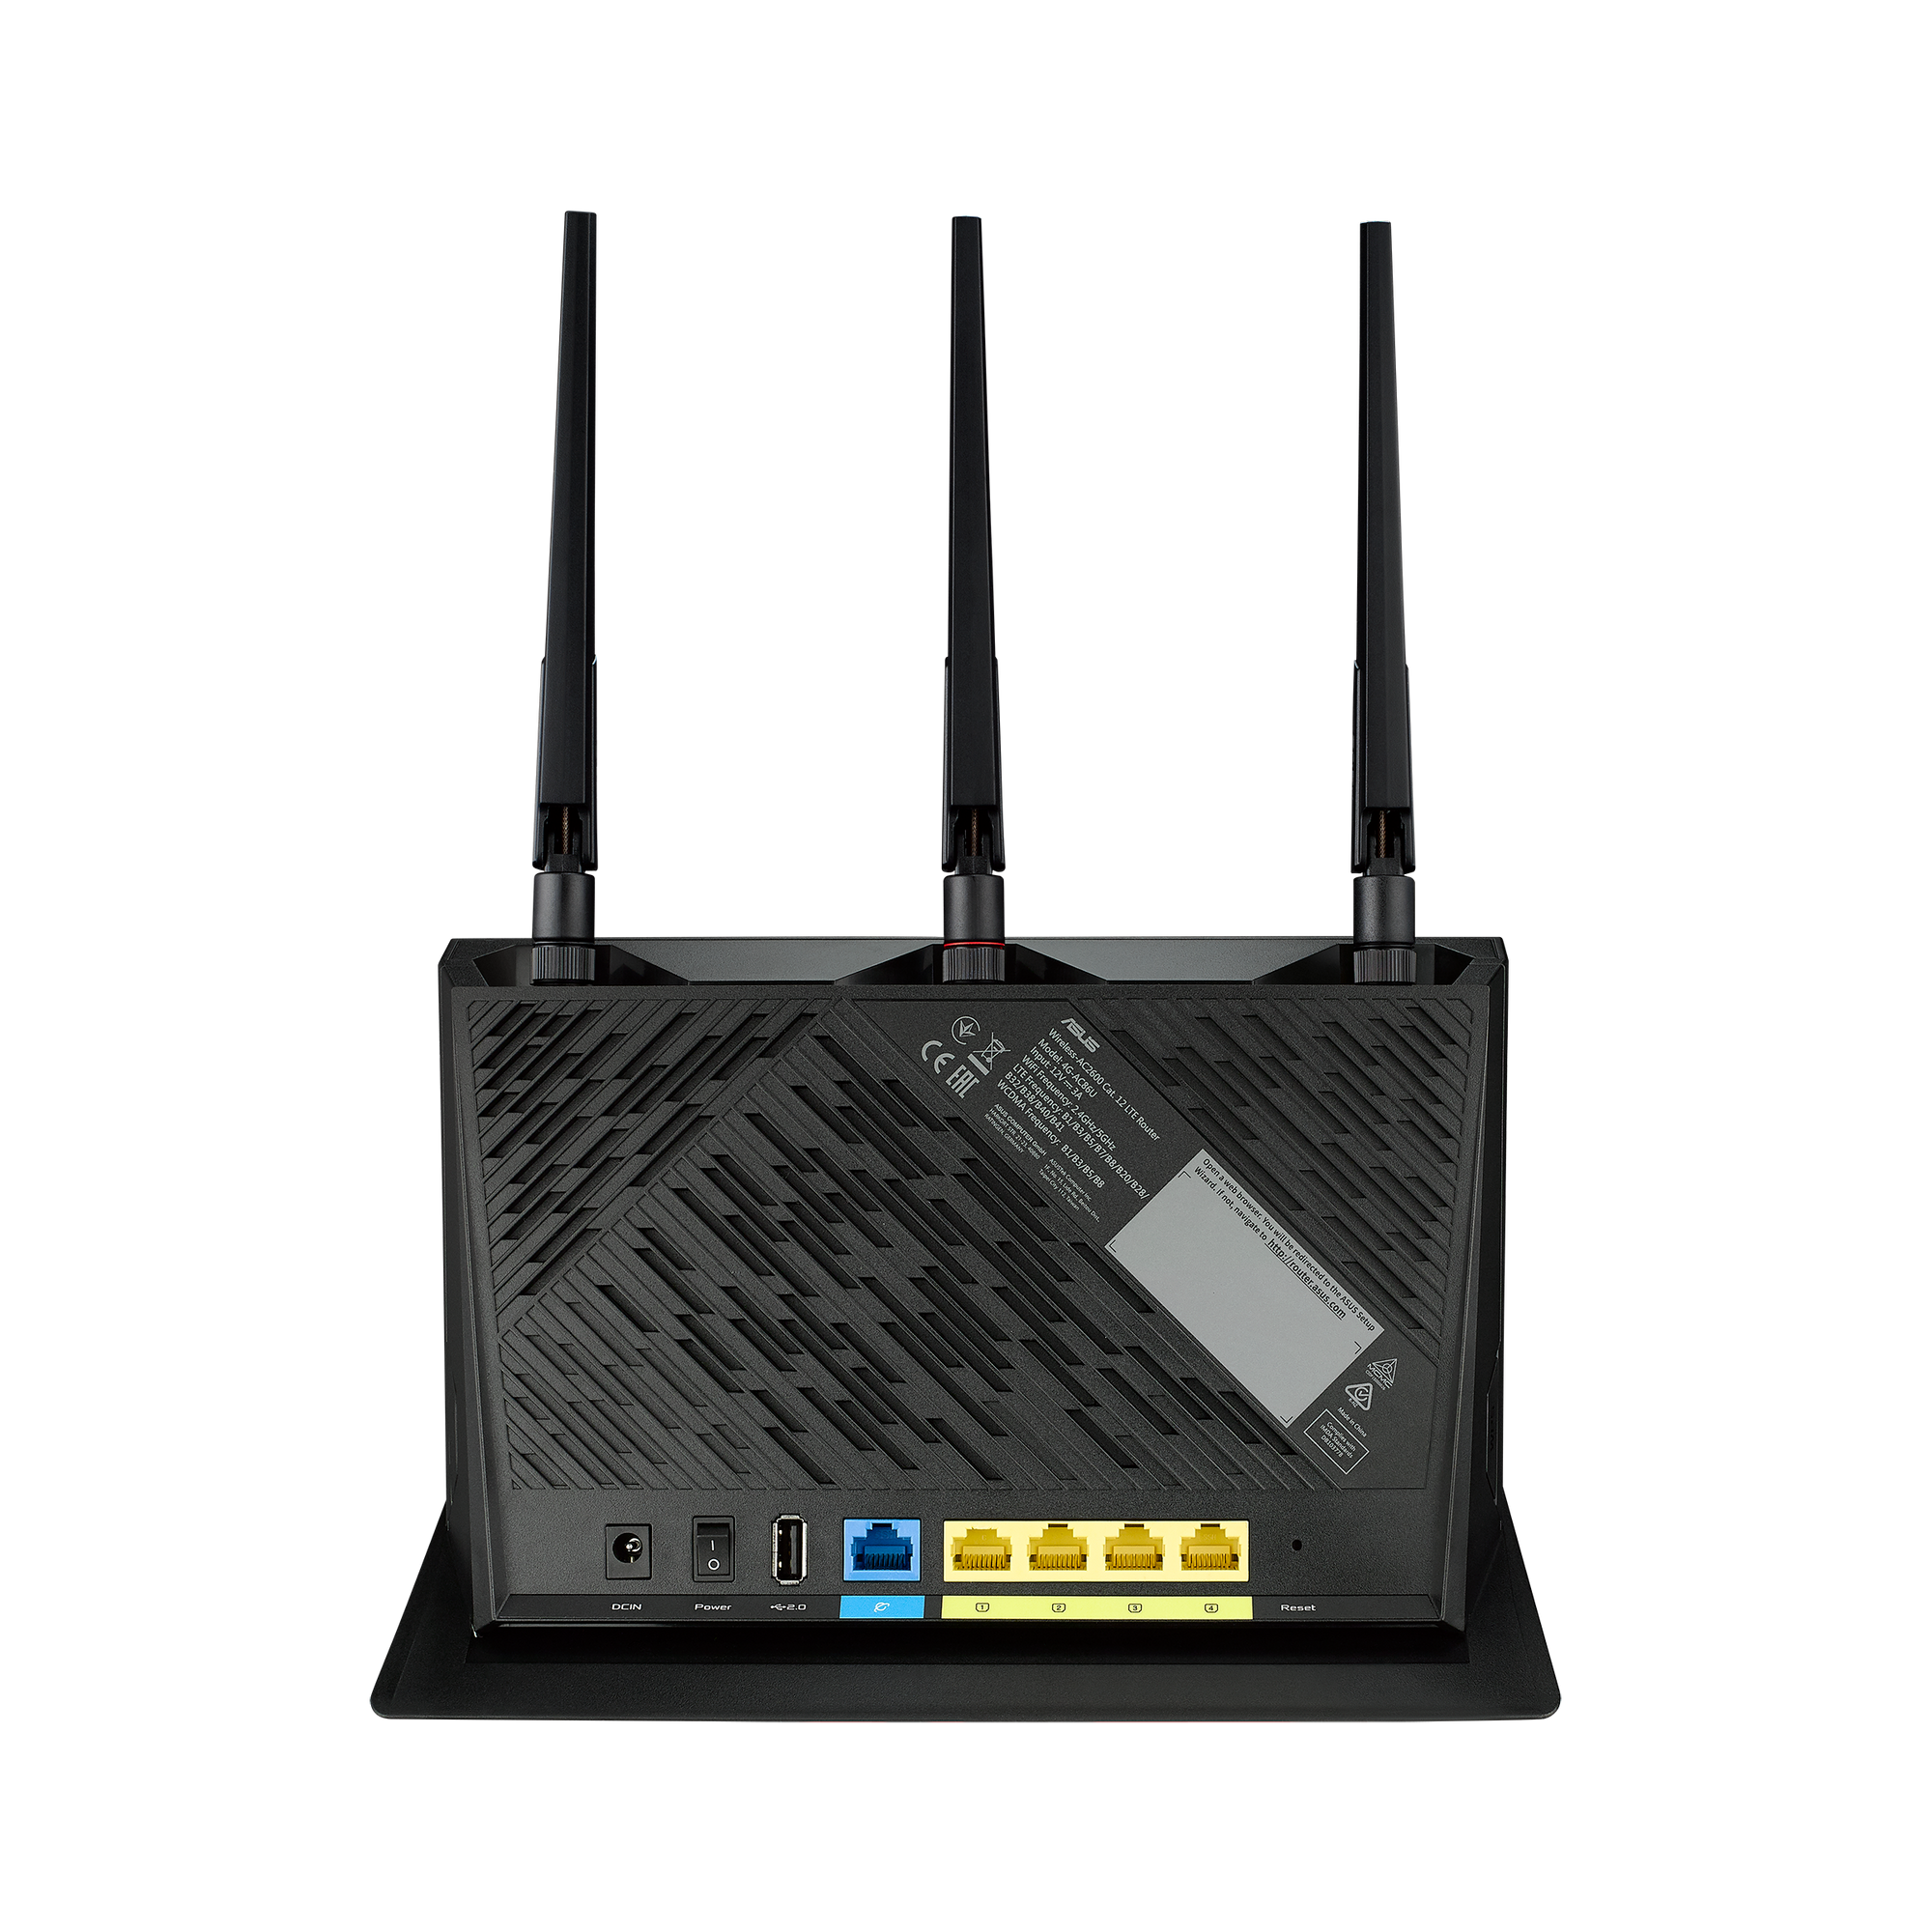 ASUS 4G-AC86U Cat. 12 600 Mbit/s Dual-Band AC2600 LTE Modem Router thumbnail 3